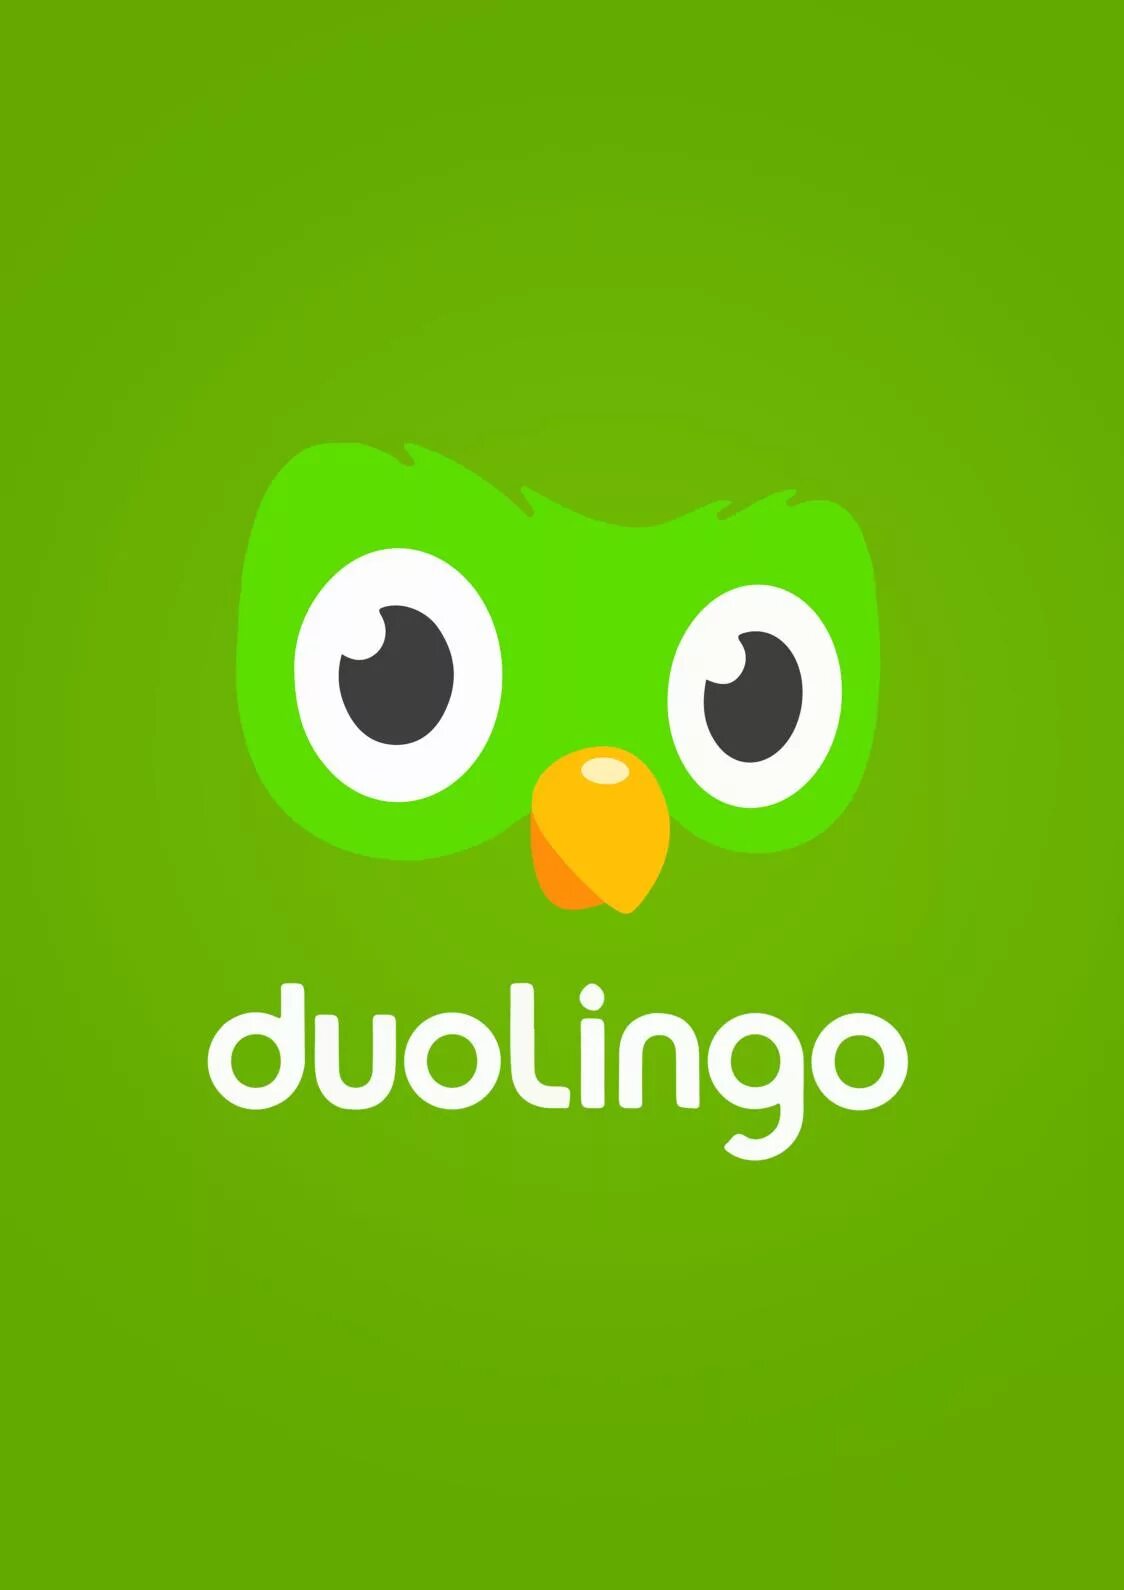 Птица дуолинго. Значок Дуолинго. Программа Duolingo. Дуолинго приложение. Иконка приложения Duolingo.